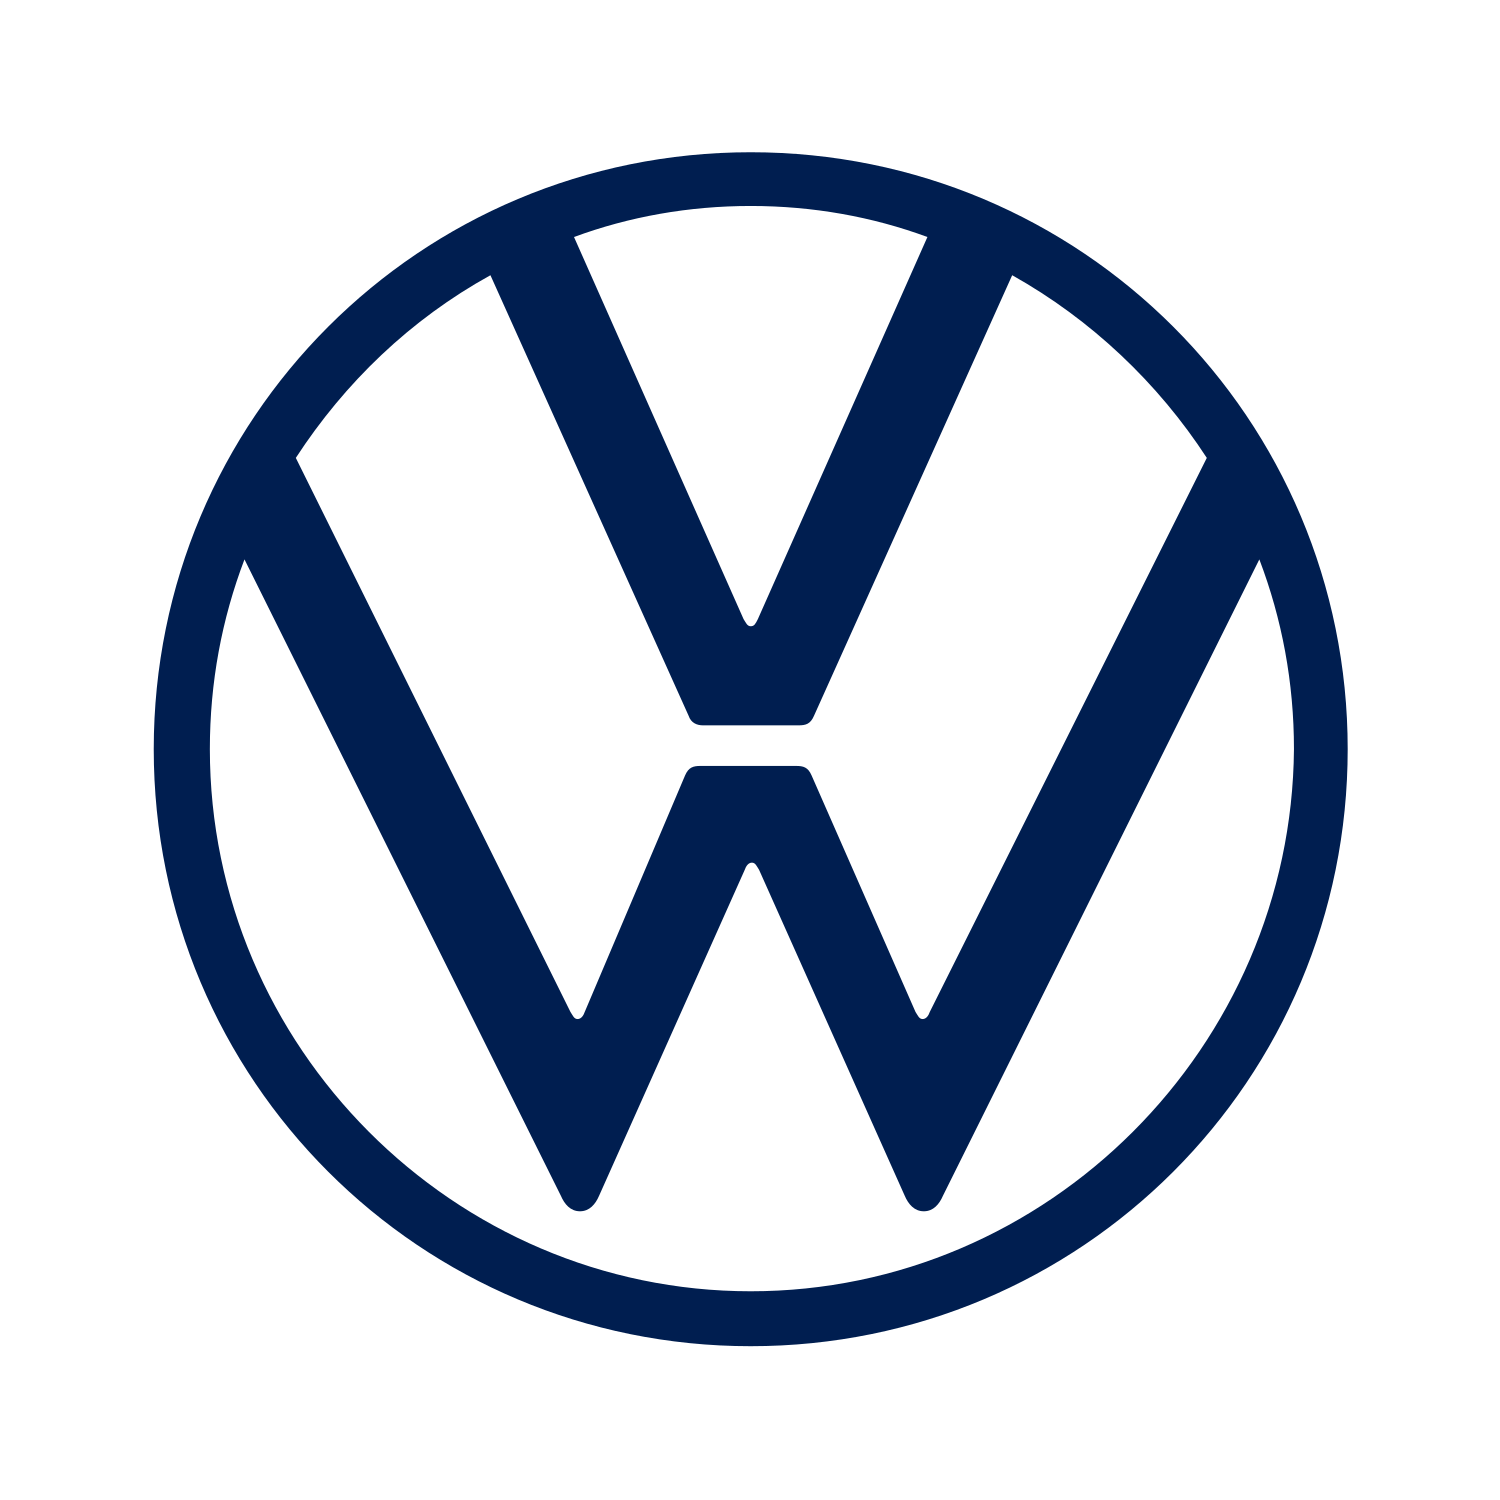 Volkswagen Accessories